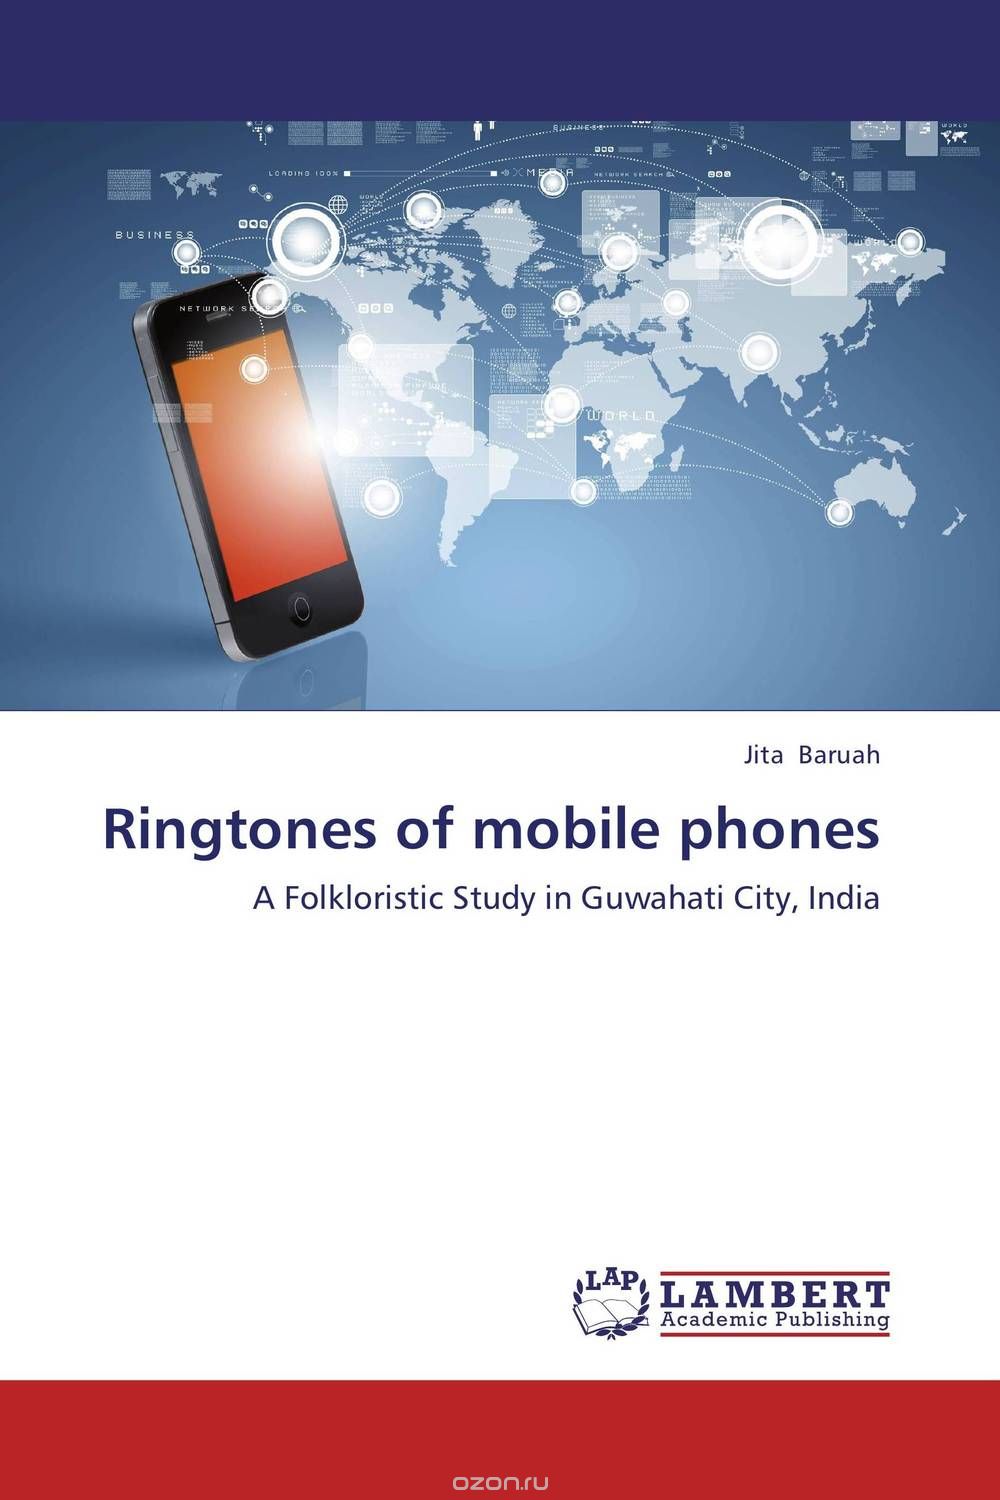 Скачать книгу "Ringtones of mobile phones"